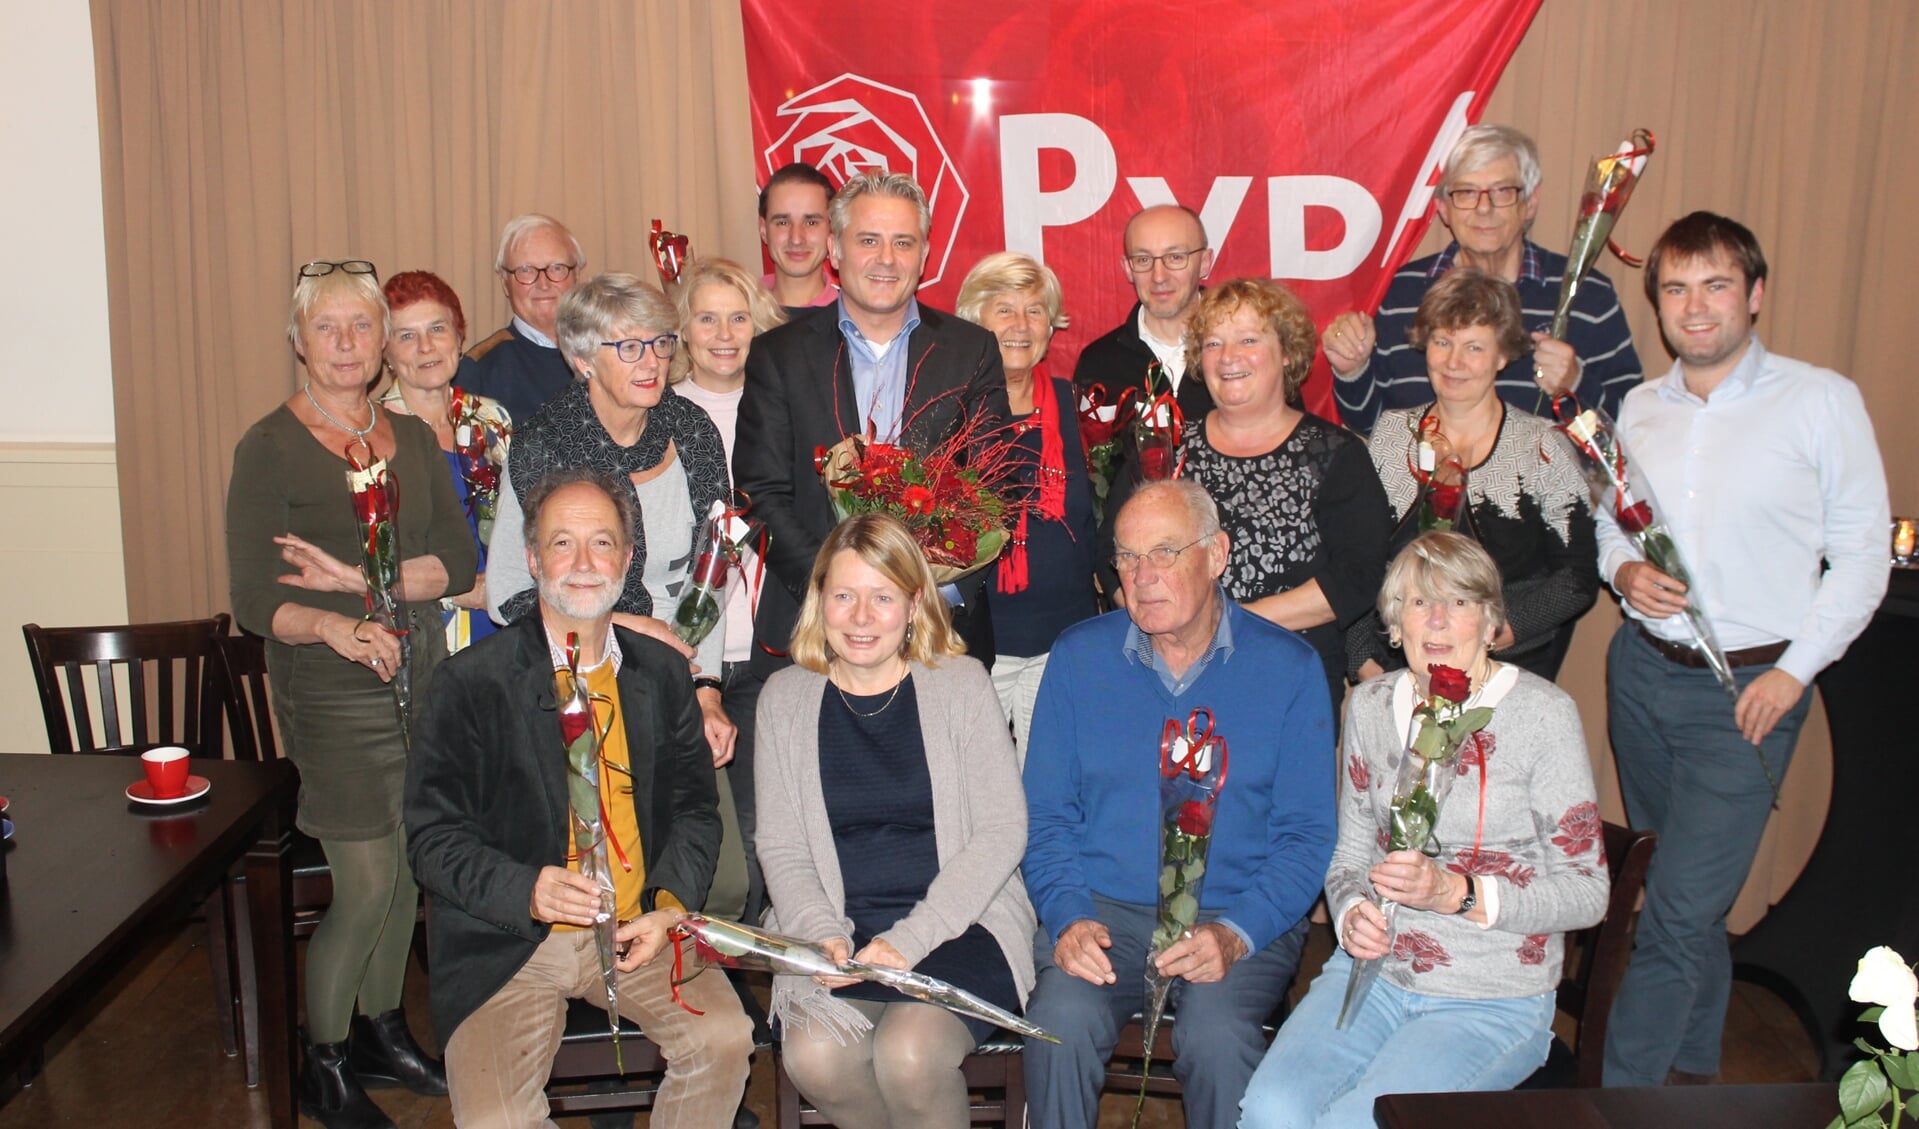  Lijststrekker Krischan Hagedoorn tussen de PvdA kandidaten voor de gemeenteraad van gemeente De Bilt.